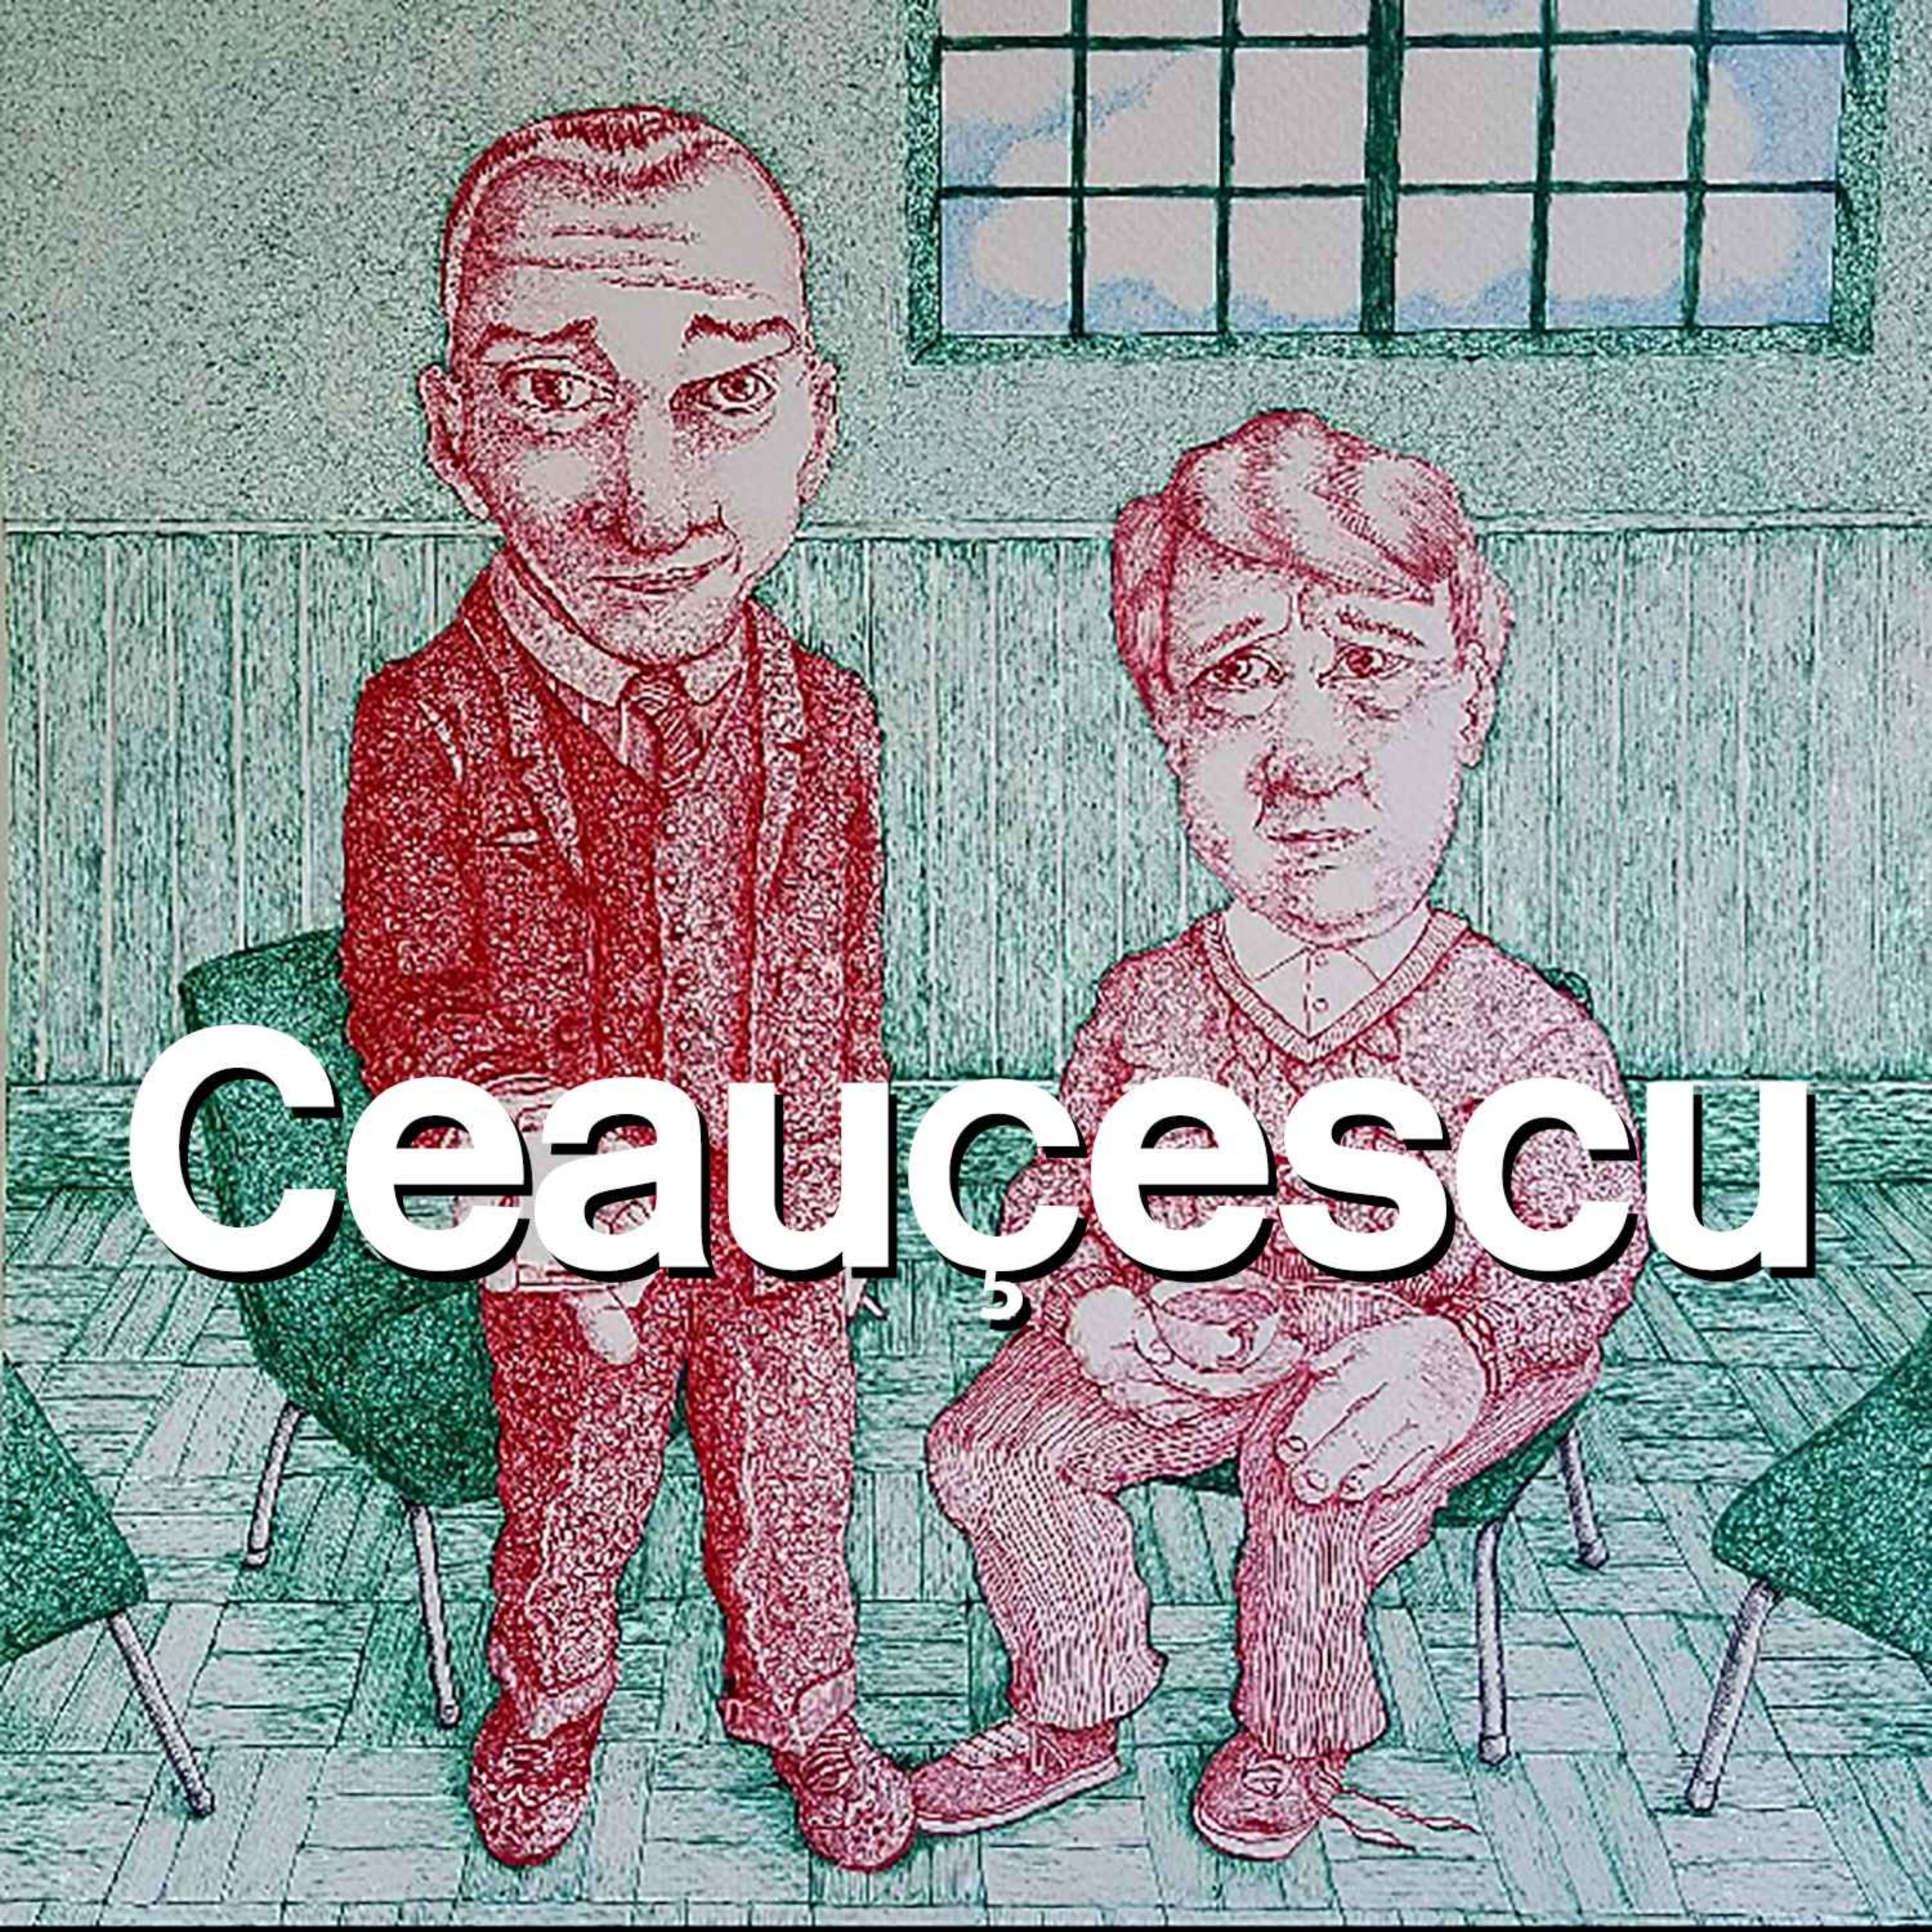 Ceauçescu